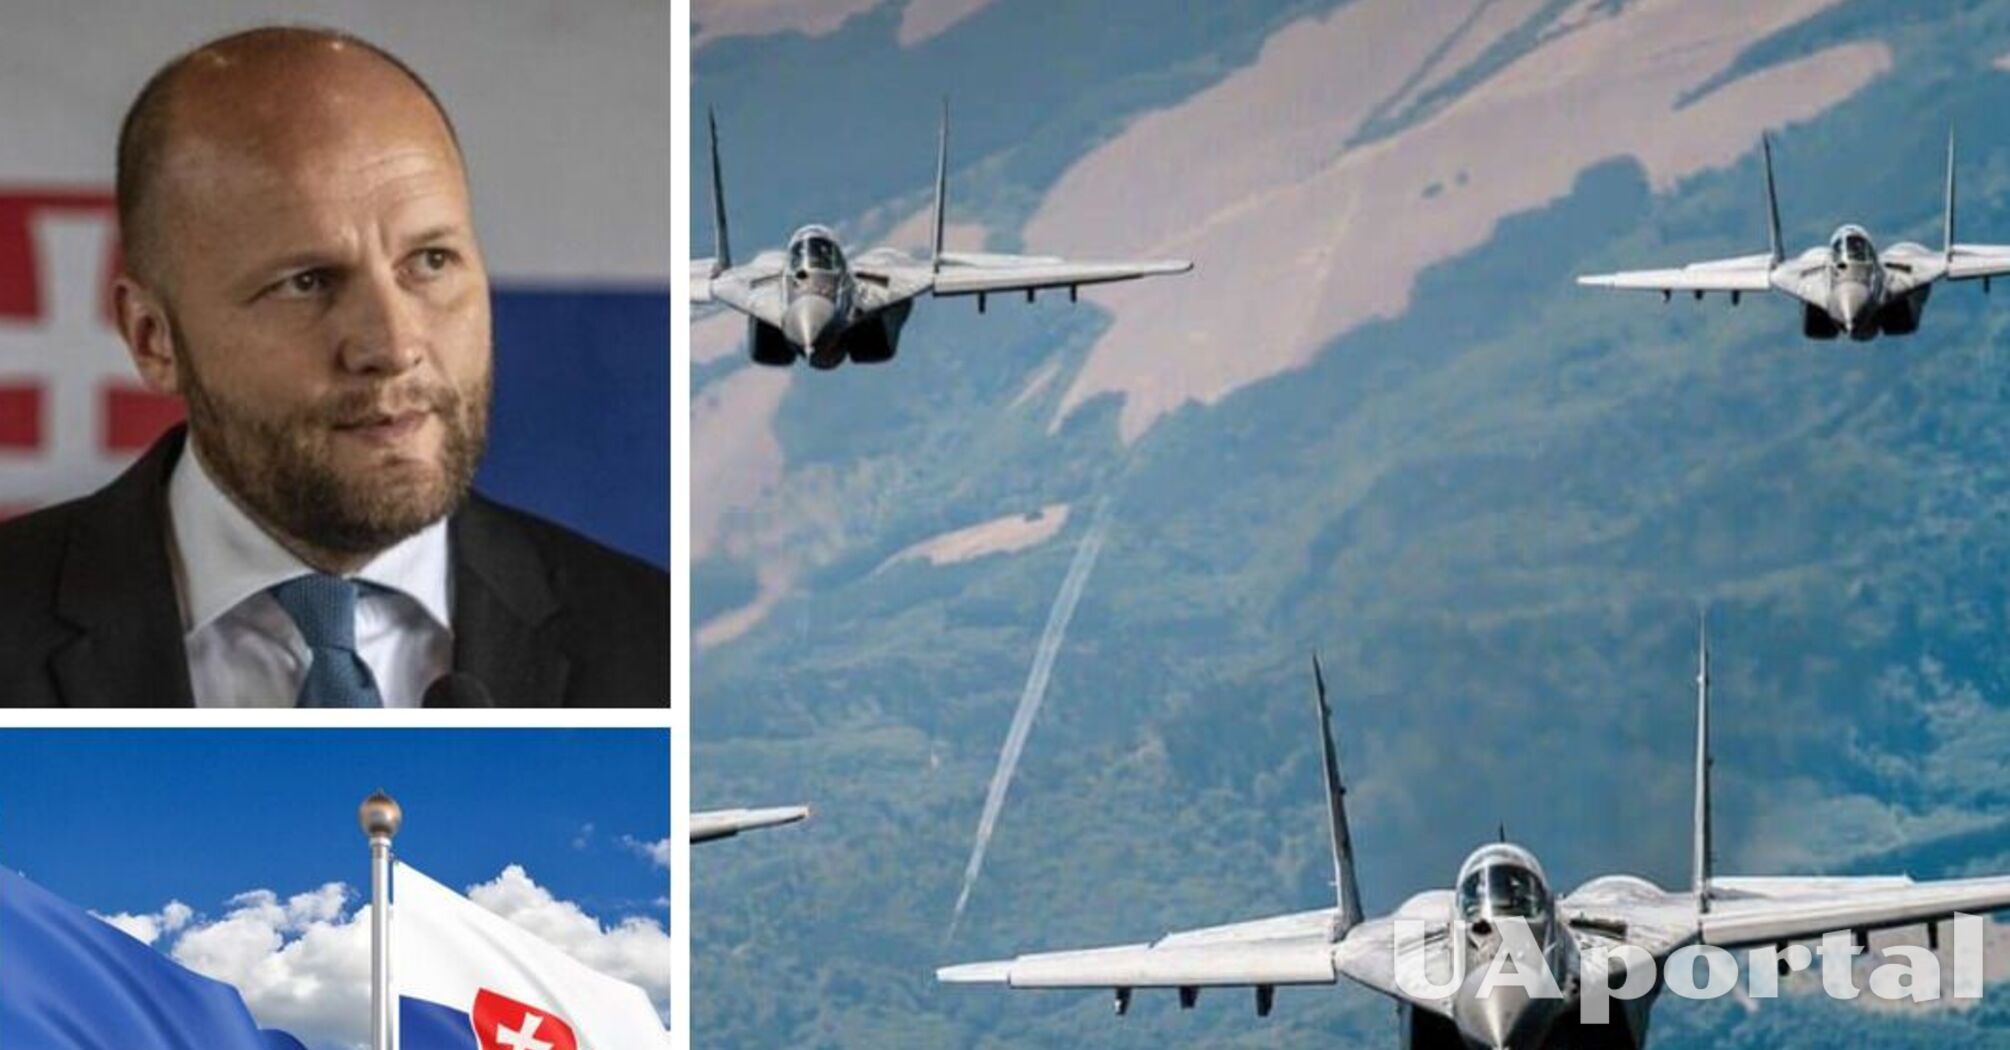 Словакия успешно передала Украине четыре истребителя МиГ-29